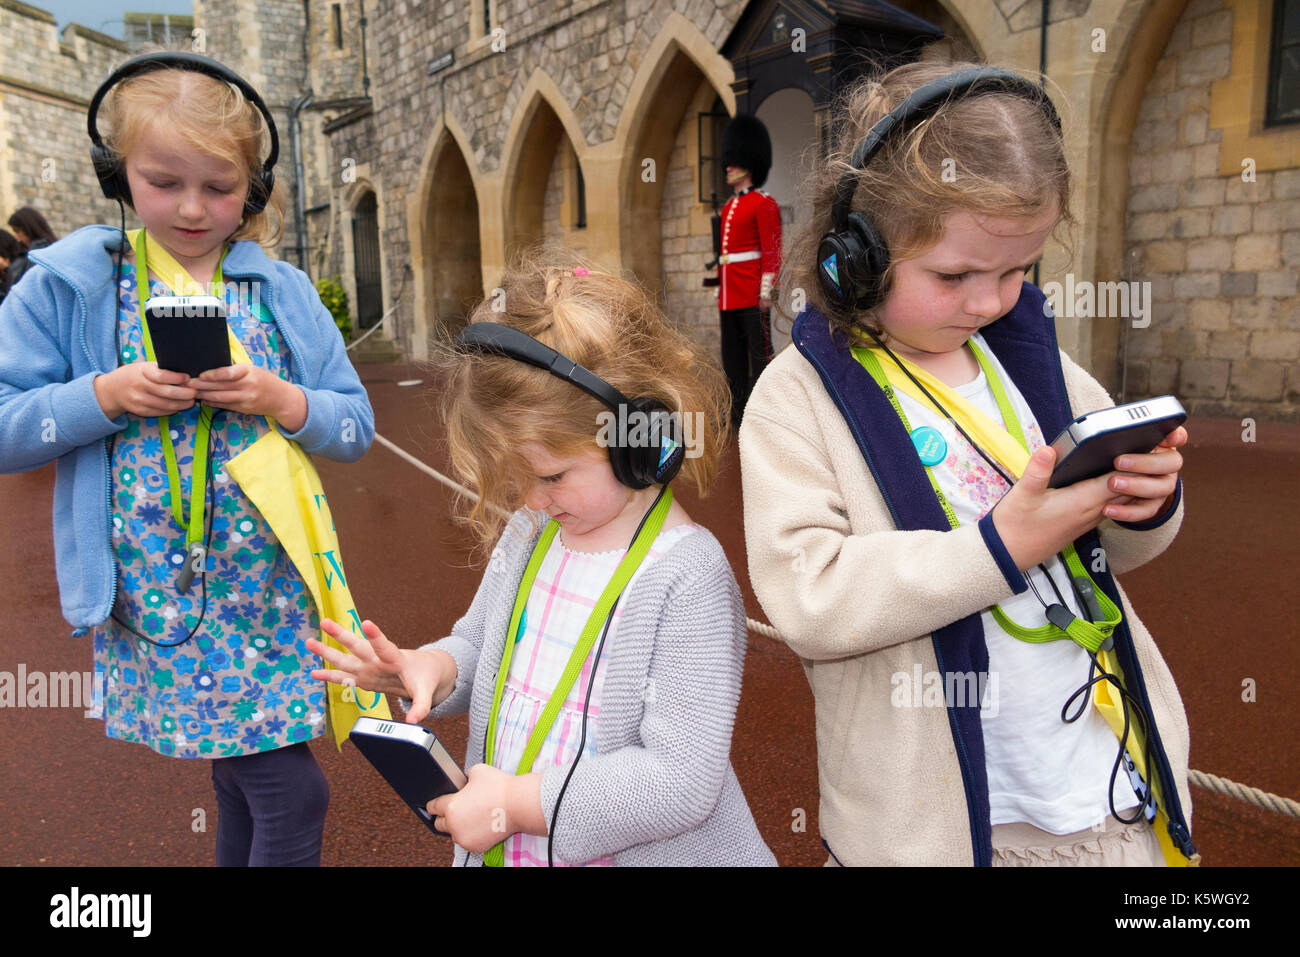 Drei Schwestern / Kinder / Kind / Kinder im Urlaub hören Sie einen Audio Guide Informationen während einer Tour in den Mauern von Schloss Windsor, Berkshire GROSSBRITANNIEN. Stockfoto